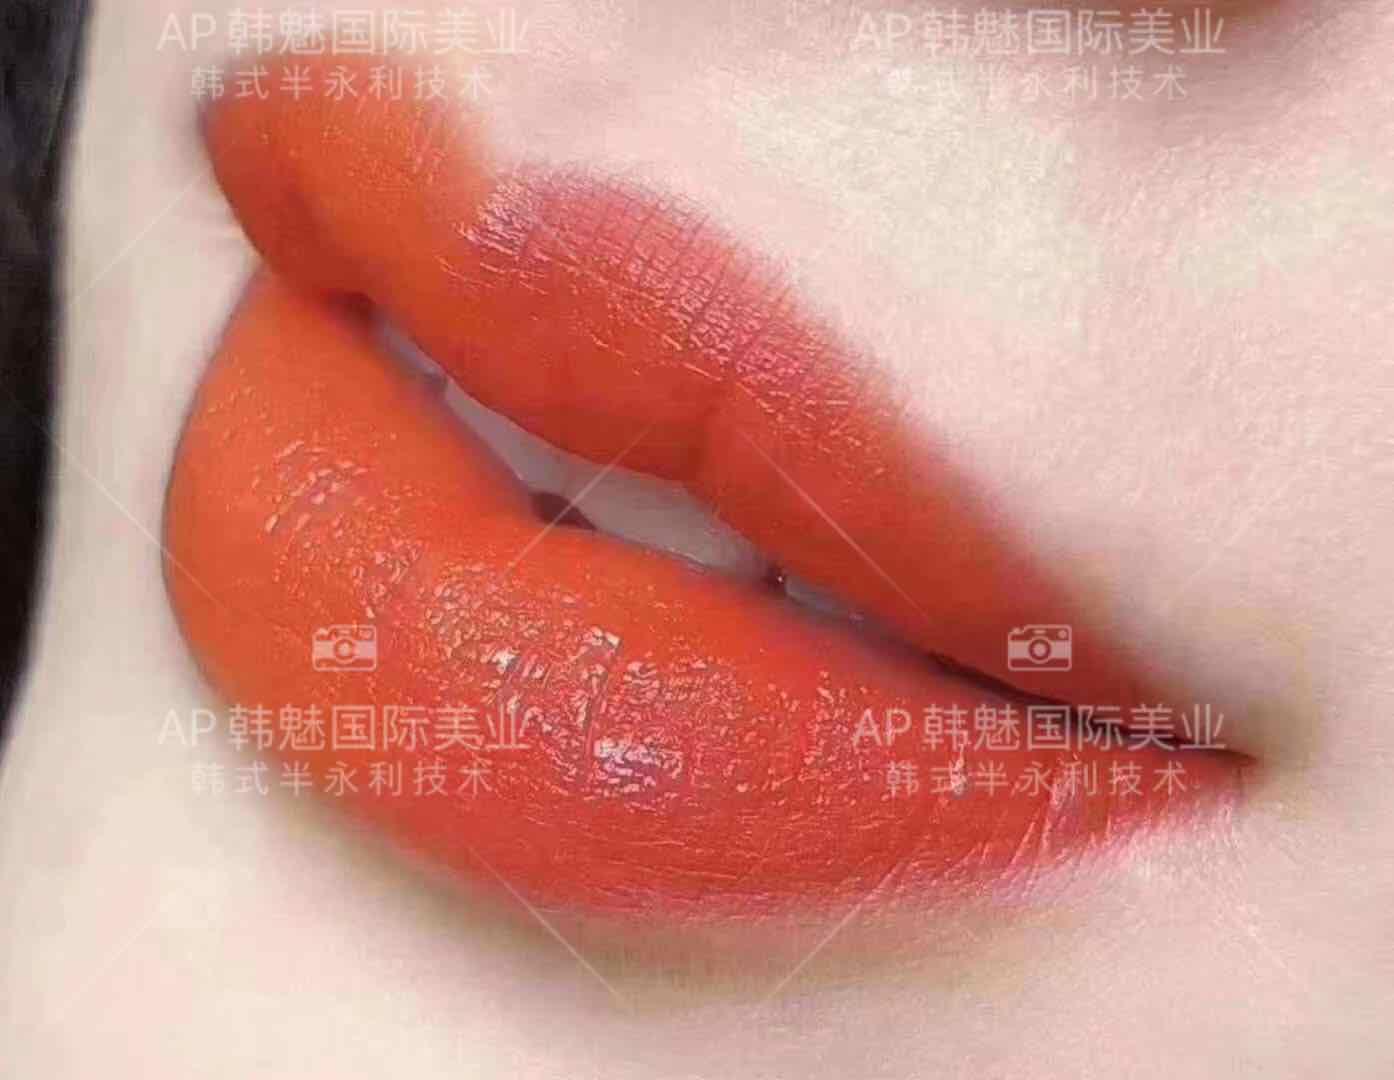 仅售880韩式半永久定妆-眉-眼-唇 - 美容护肤 - 桂林分类信息 桂林二手市场